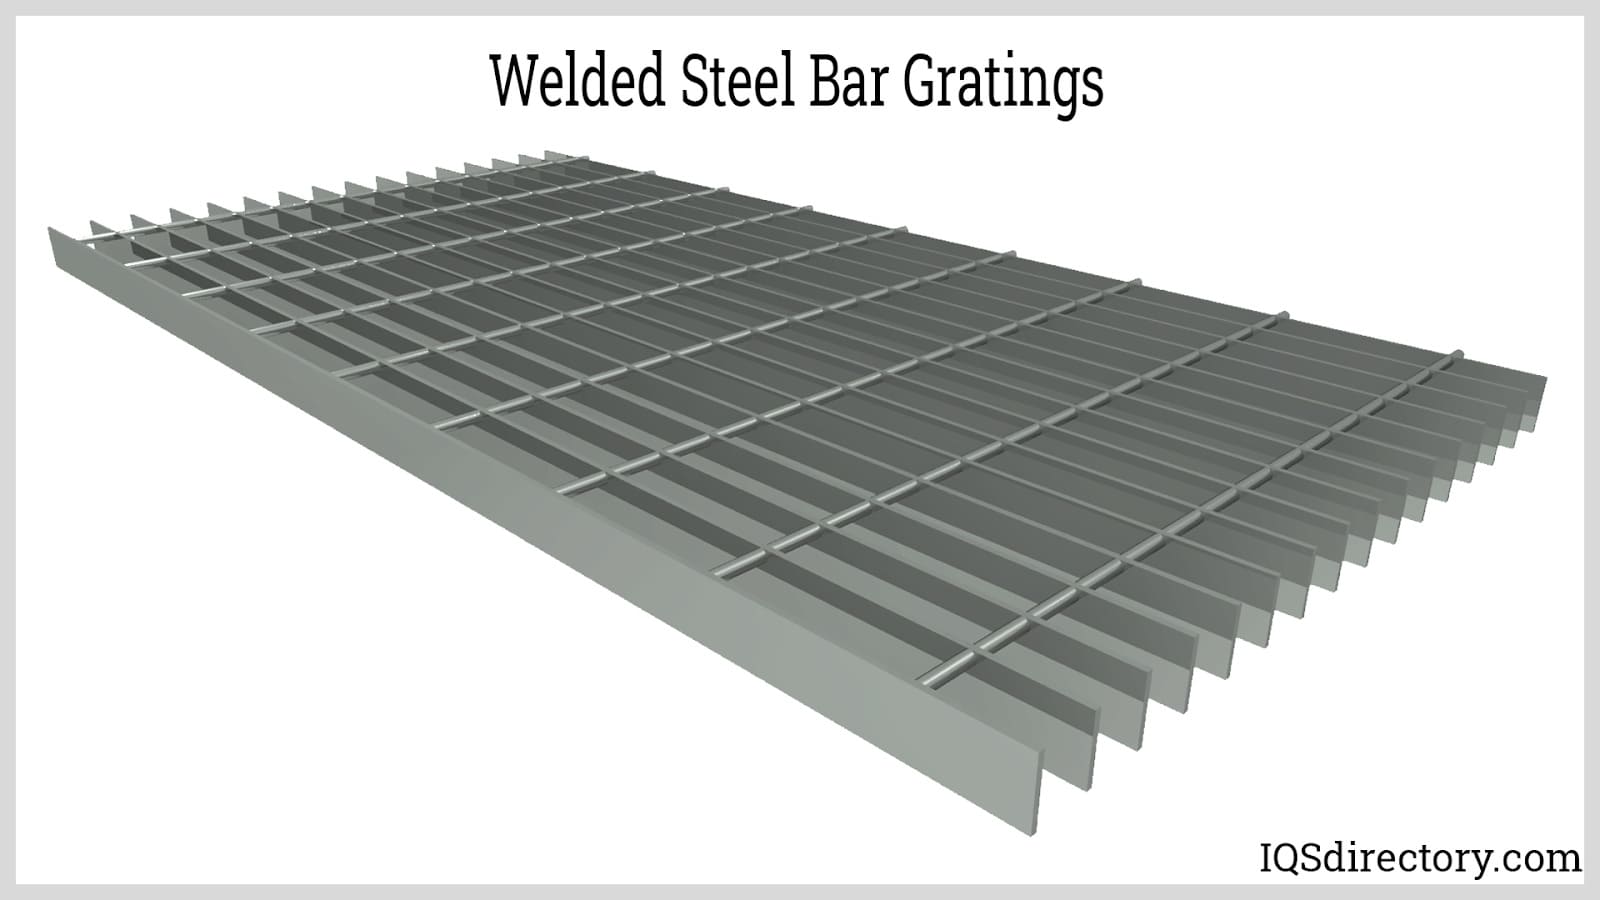 Welded Steel Bar Gratings